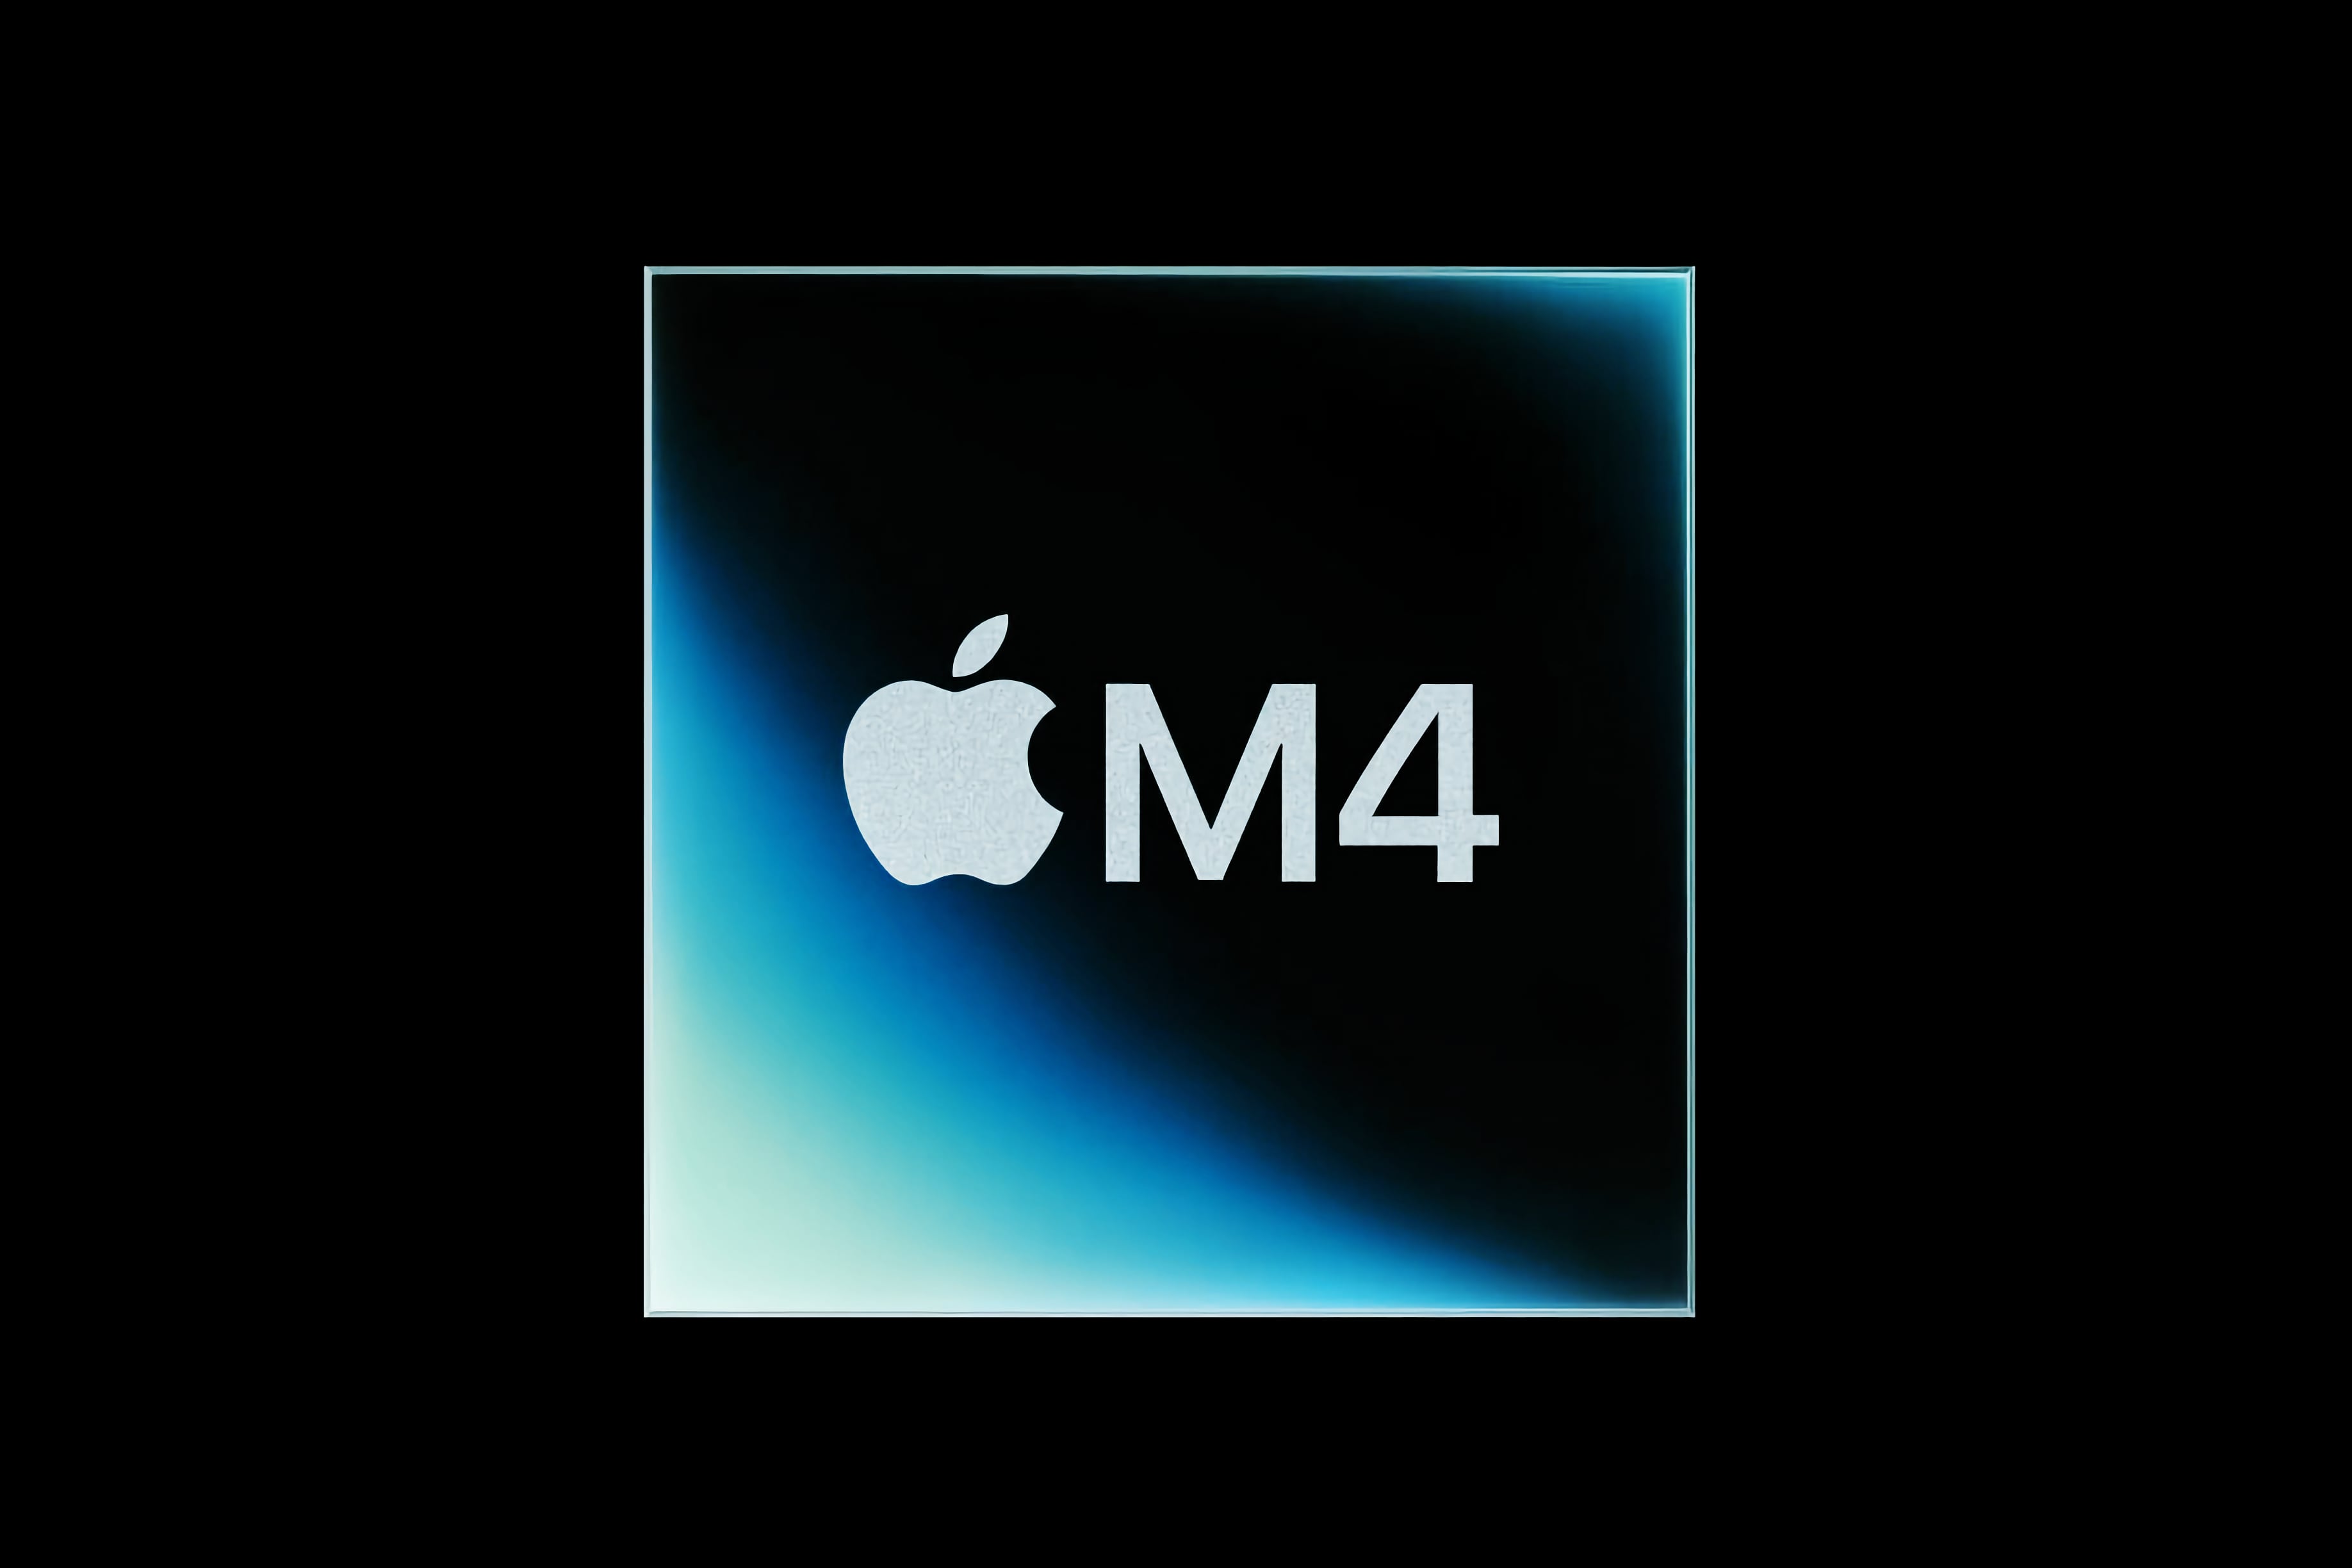 Гурман уточнил, когда выйдут новые Mac с процессором M4